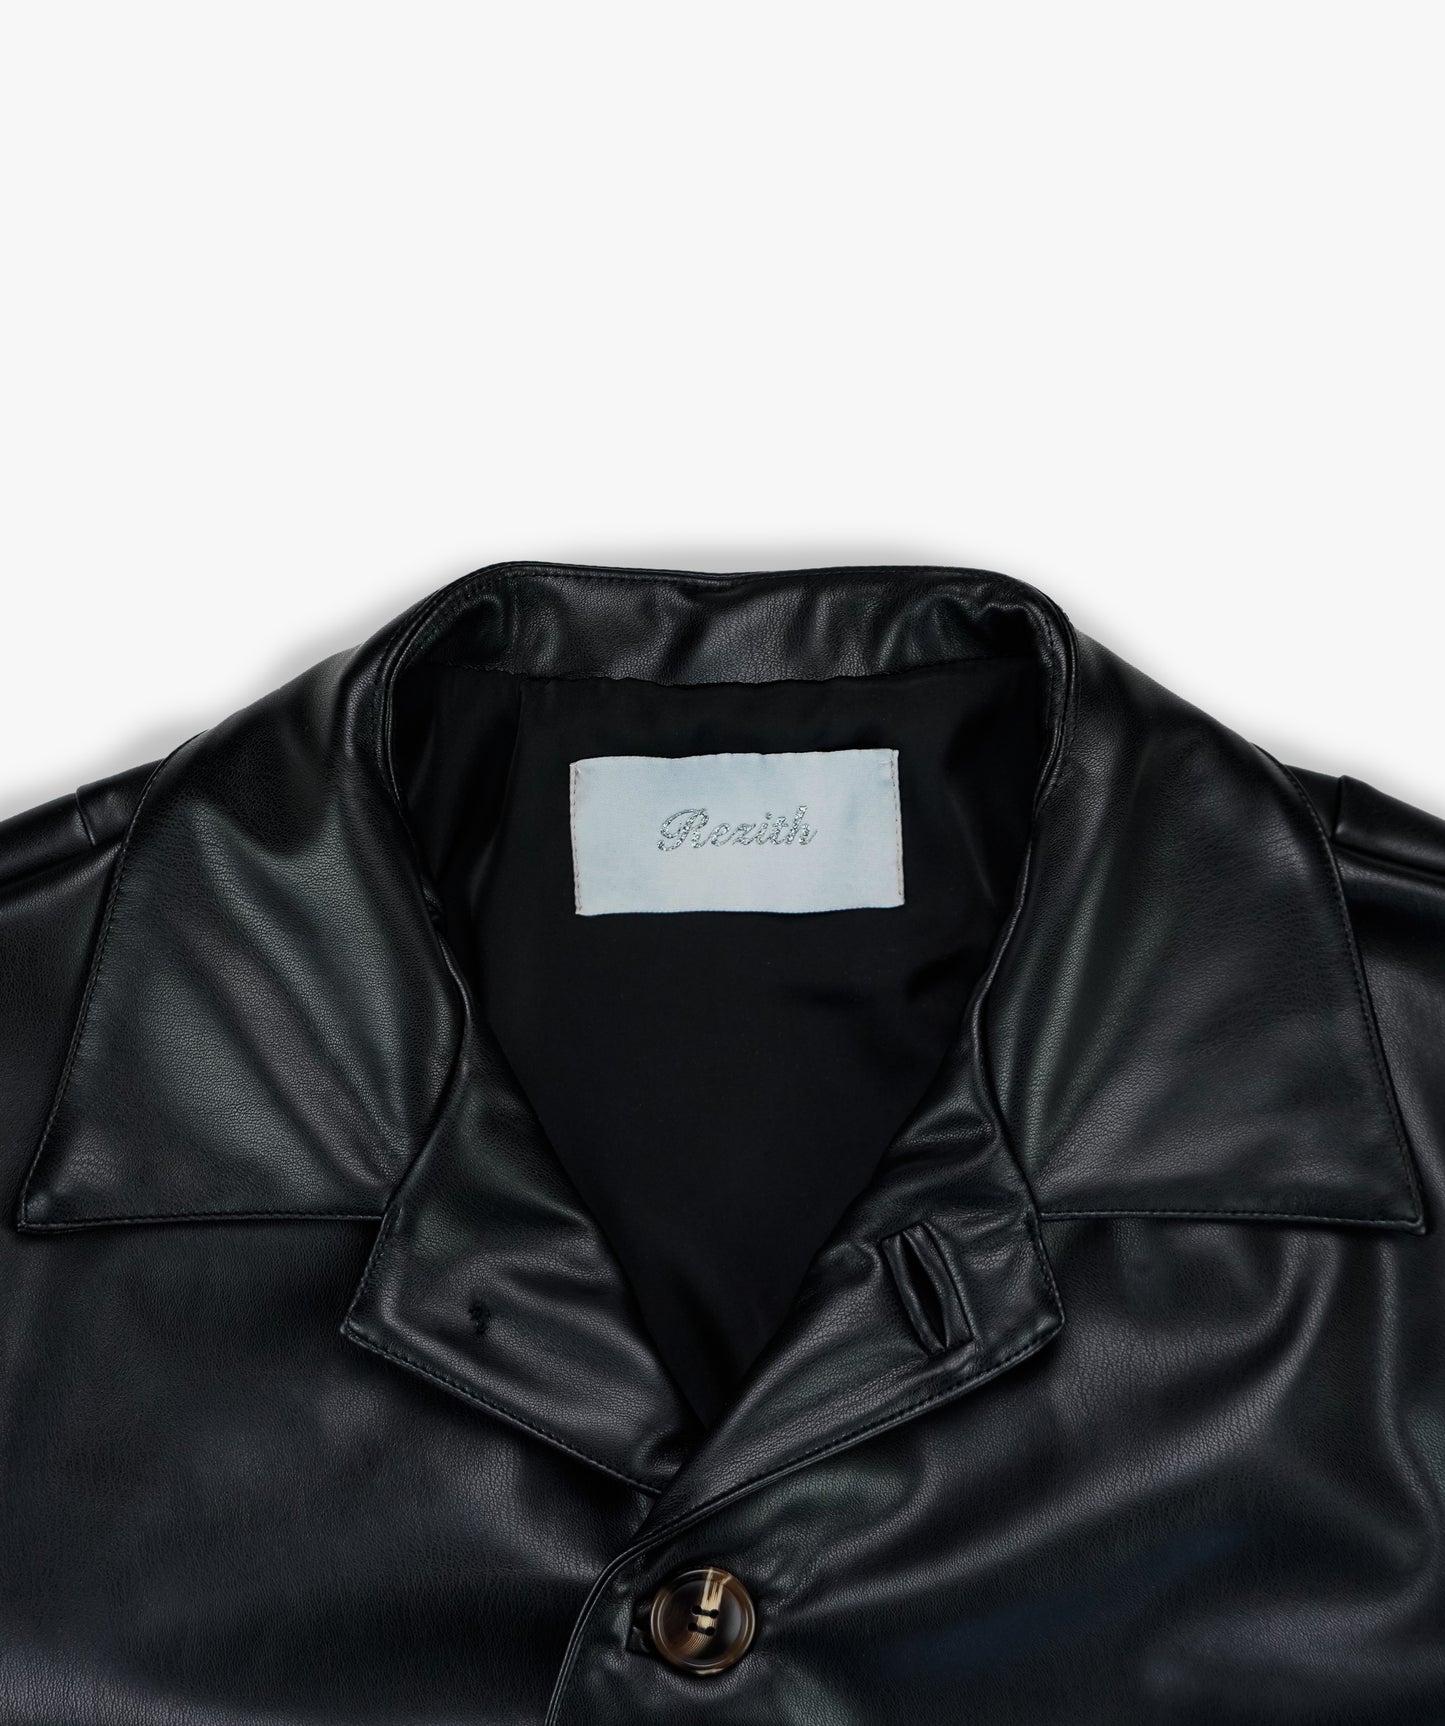 Asymmetrical Leather Jacket